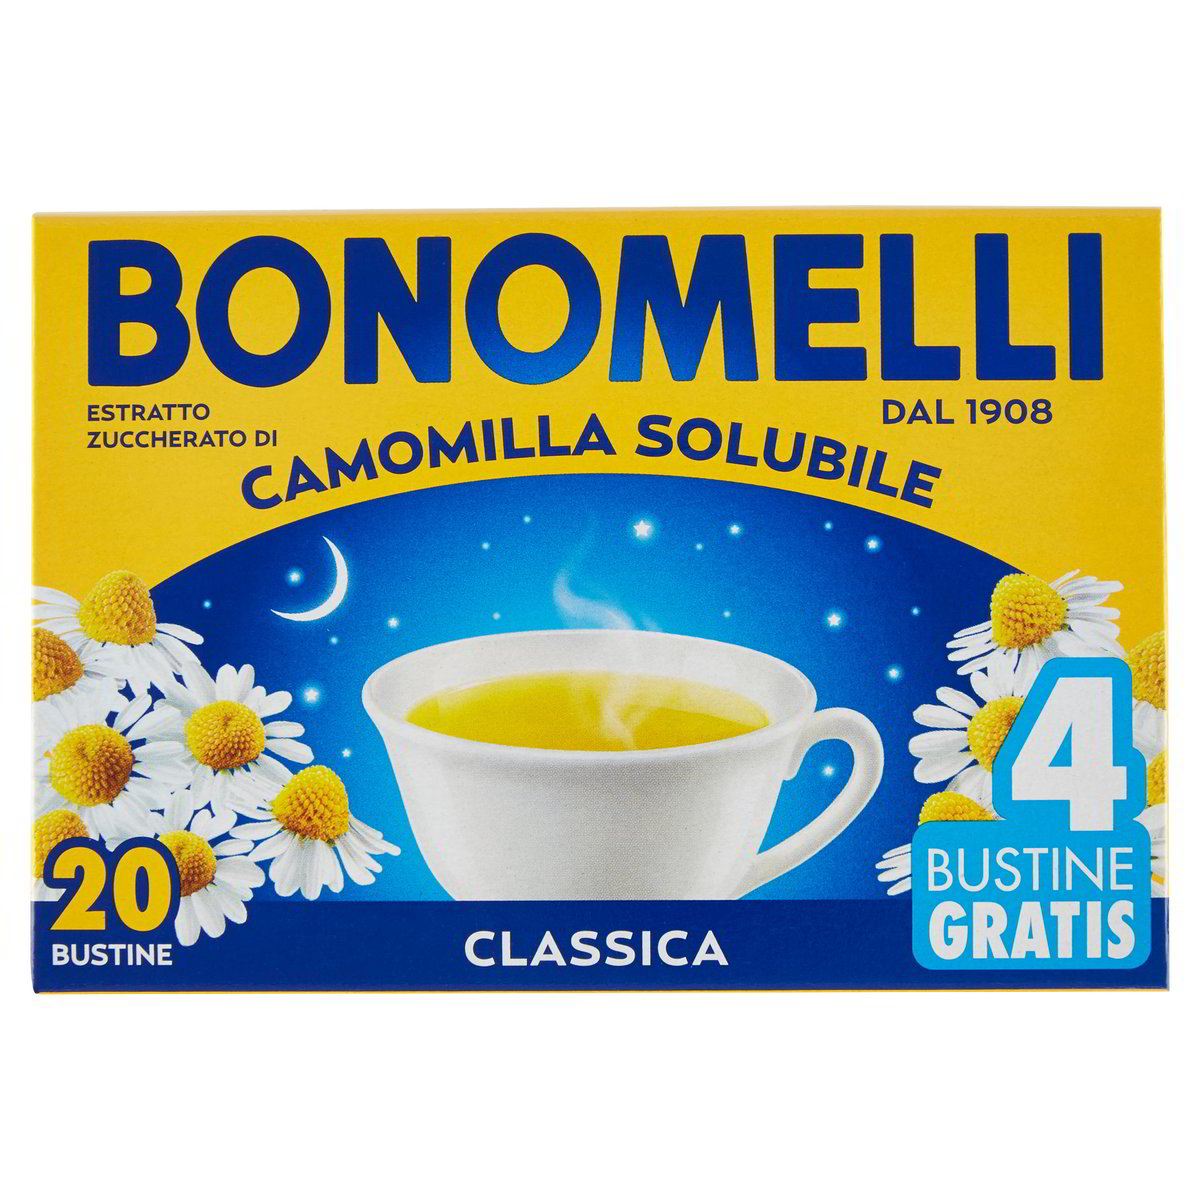 Bonomelli Camomilla solubile classica